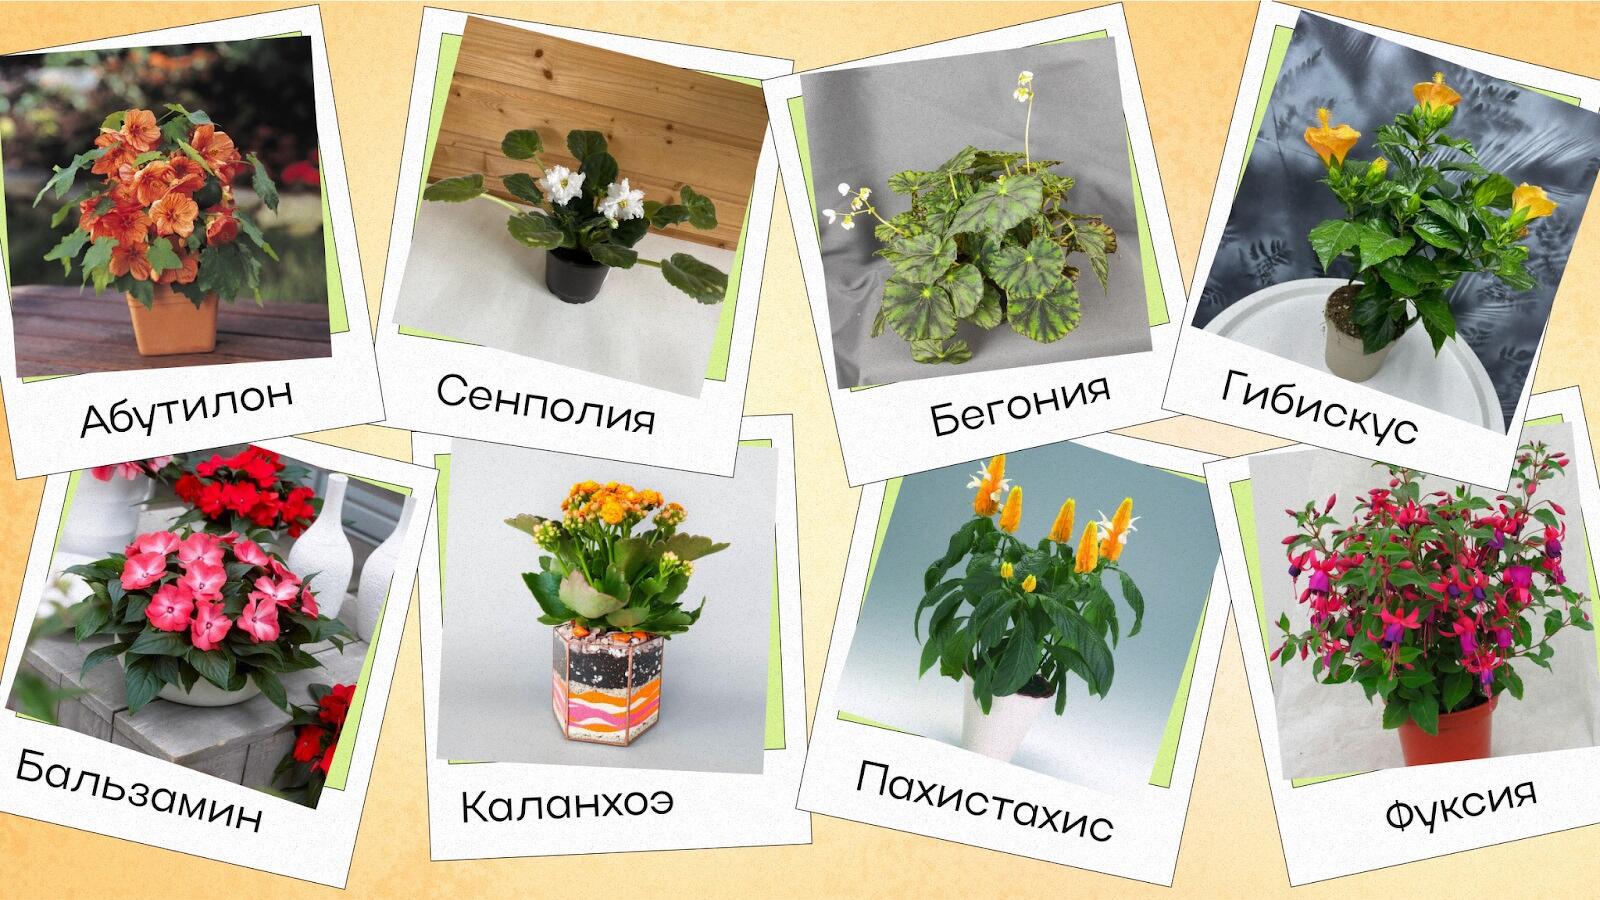 Каталог комнатных растений. Фото и названия.